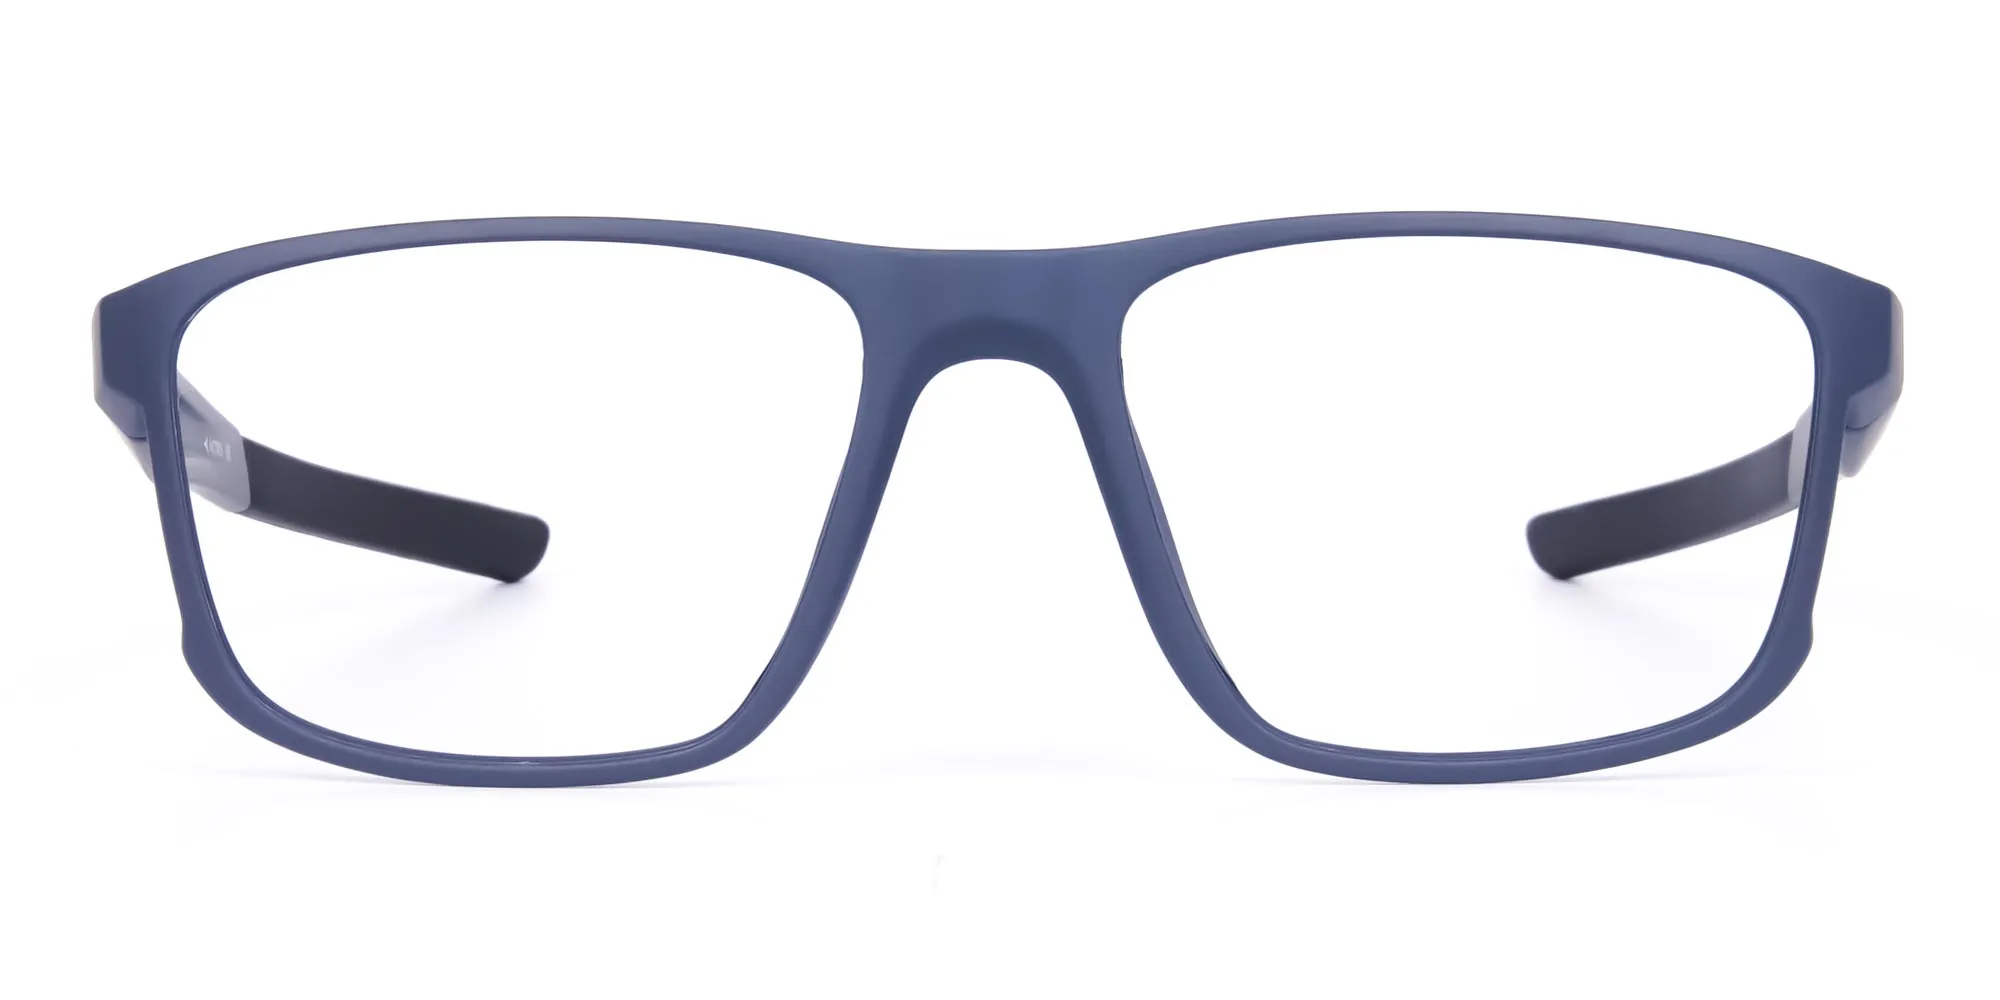 Matte Blue Rectangular Glasses For Golf - 2